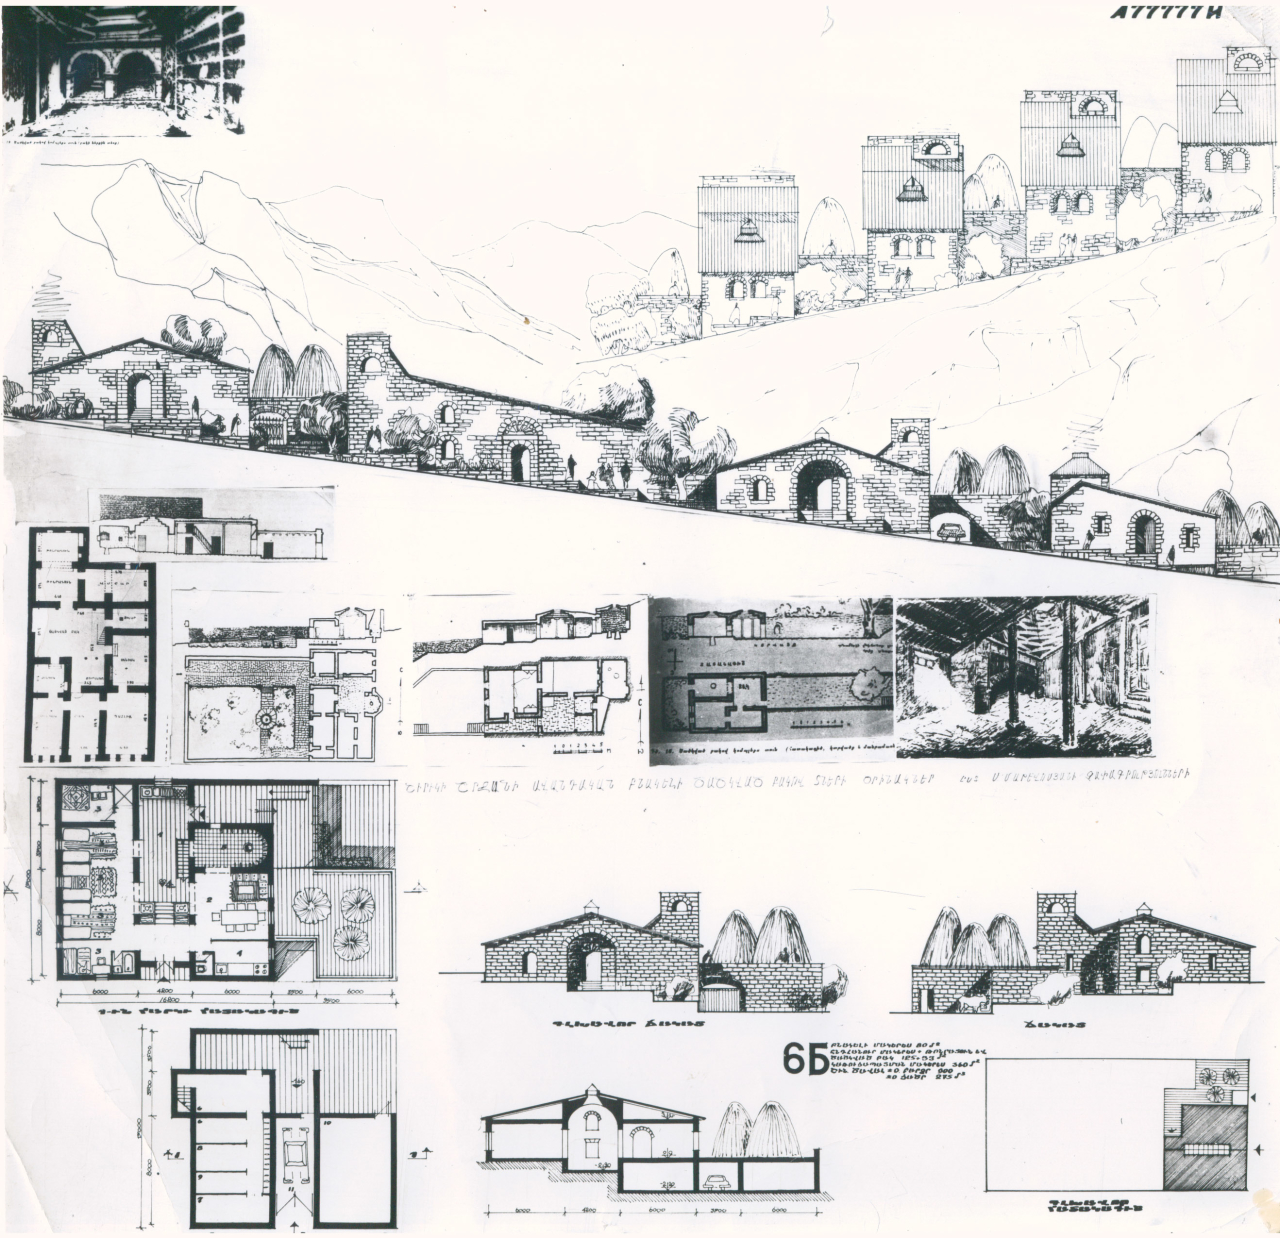 Շիրակի շրջանի ավանդական բնակելի ծածկած բակով տների օրինակներ 